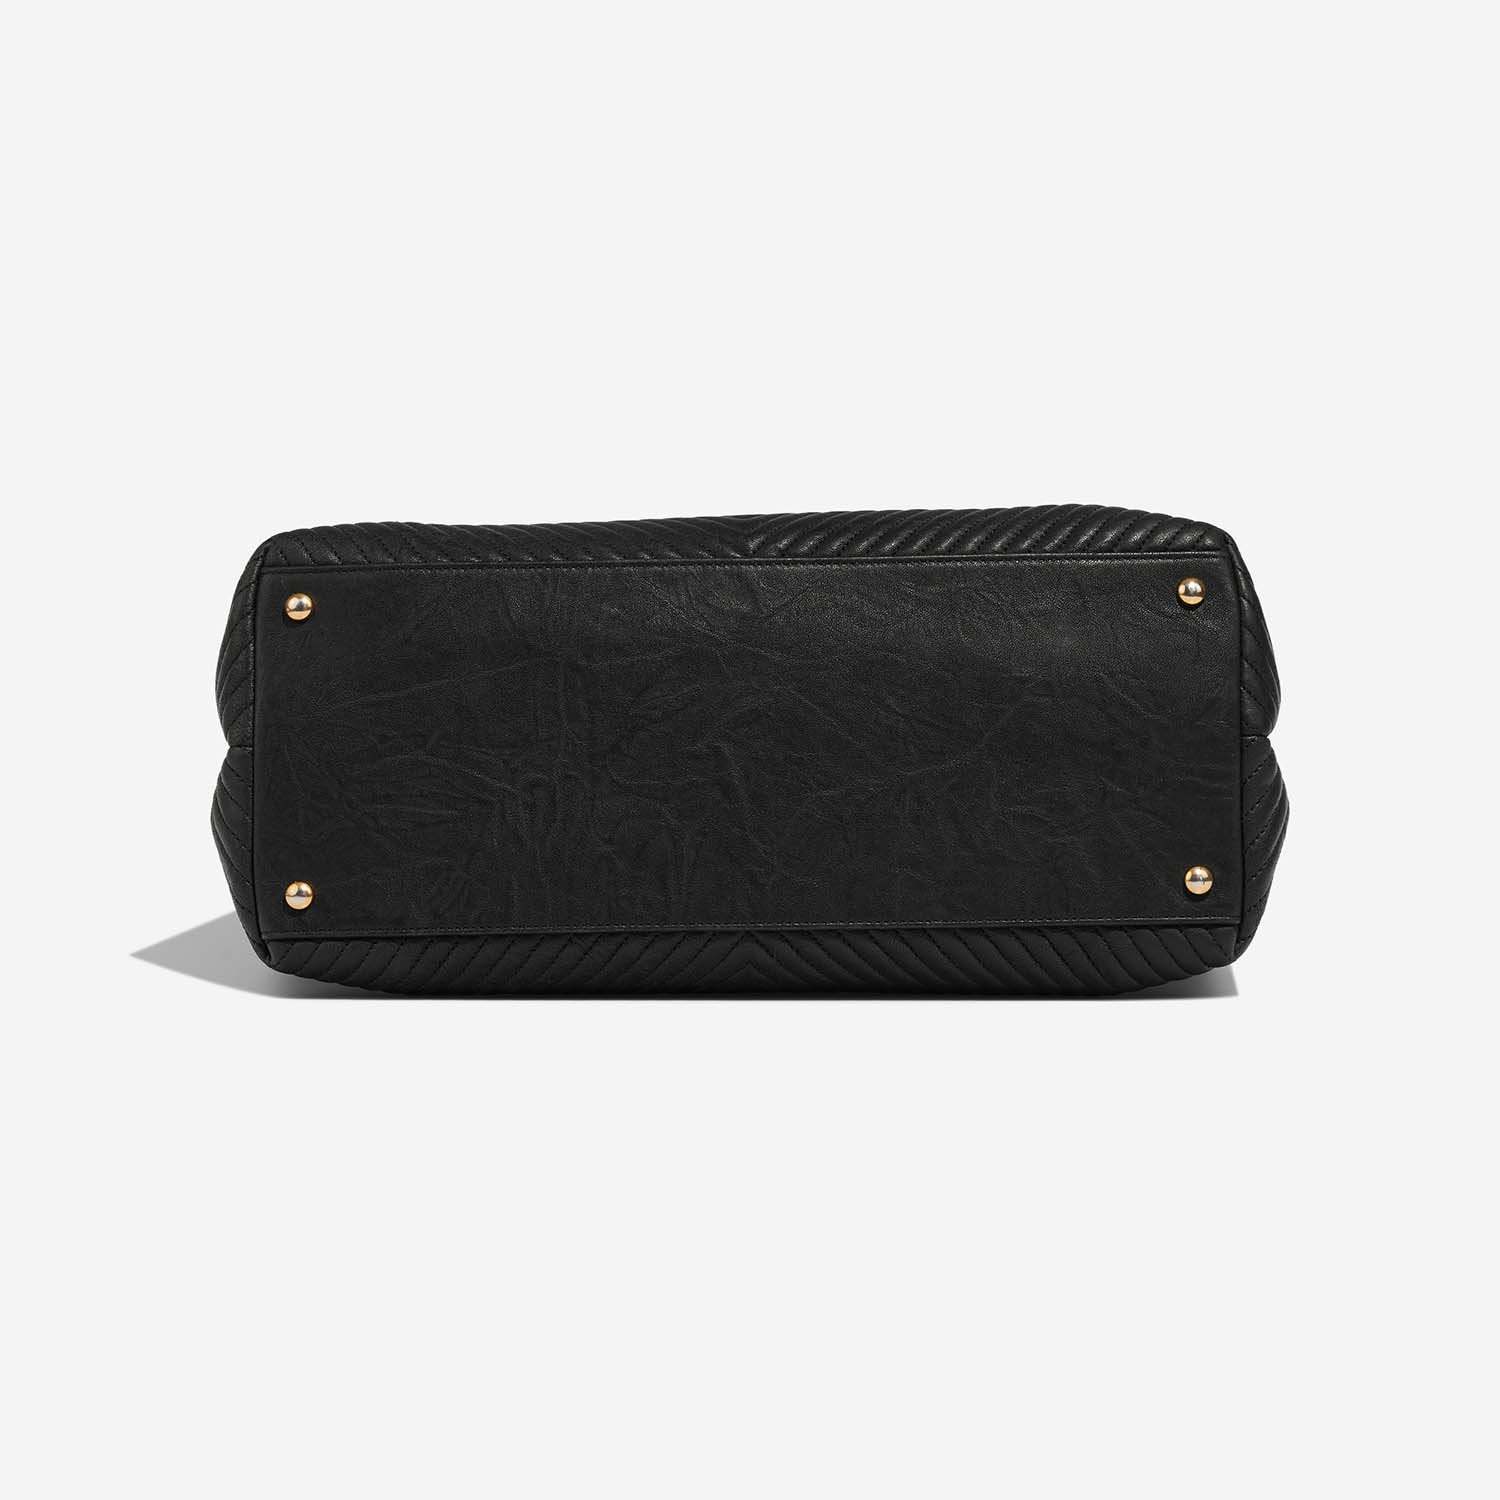 Chanel GST Large Black Bottom | Verkaufen Sie Ihre Designer-Tasche auf Saclab.com